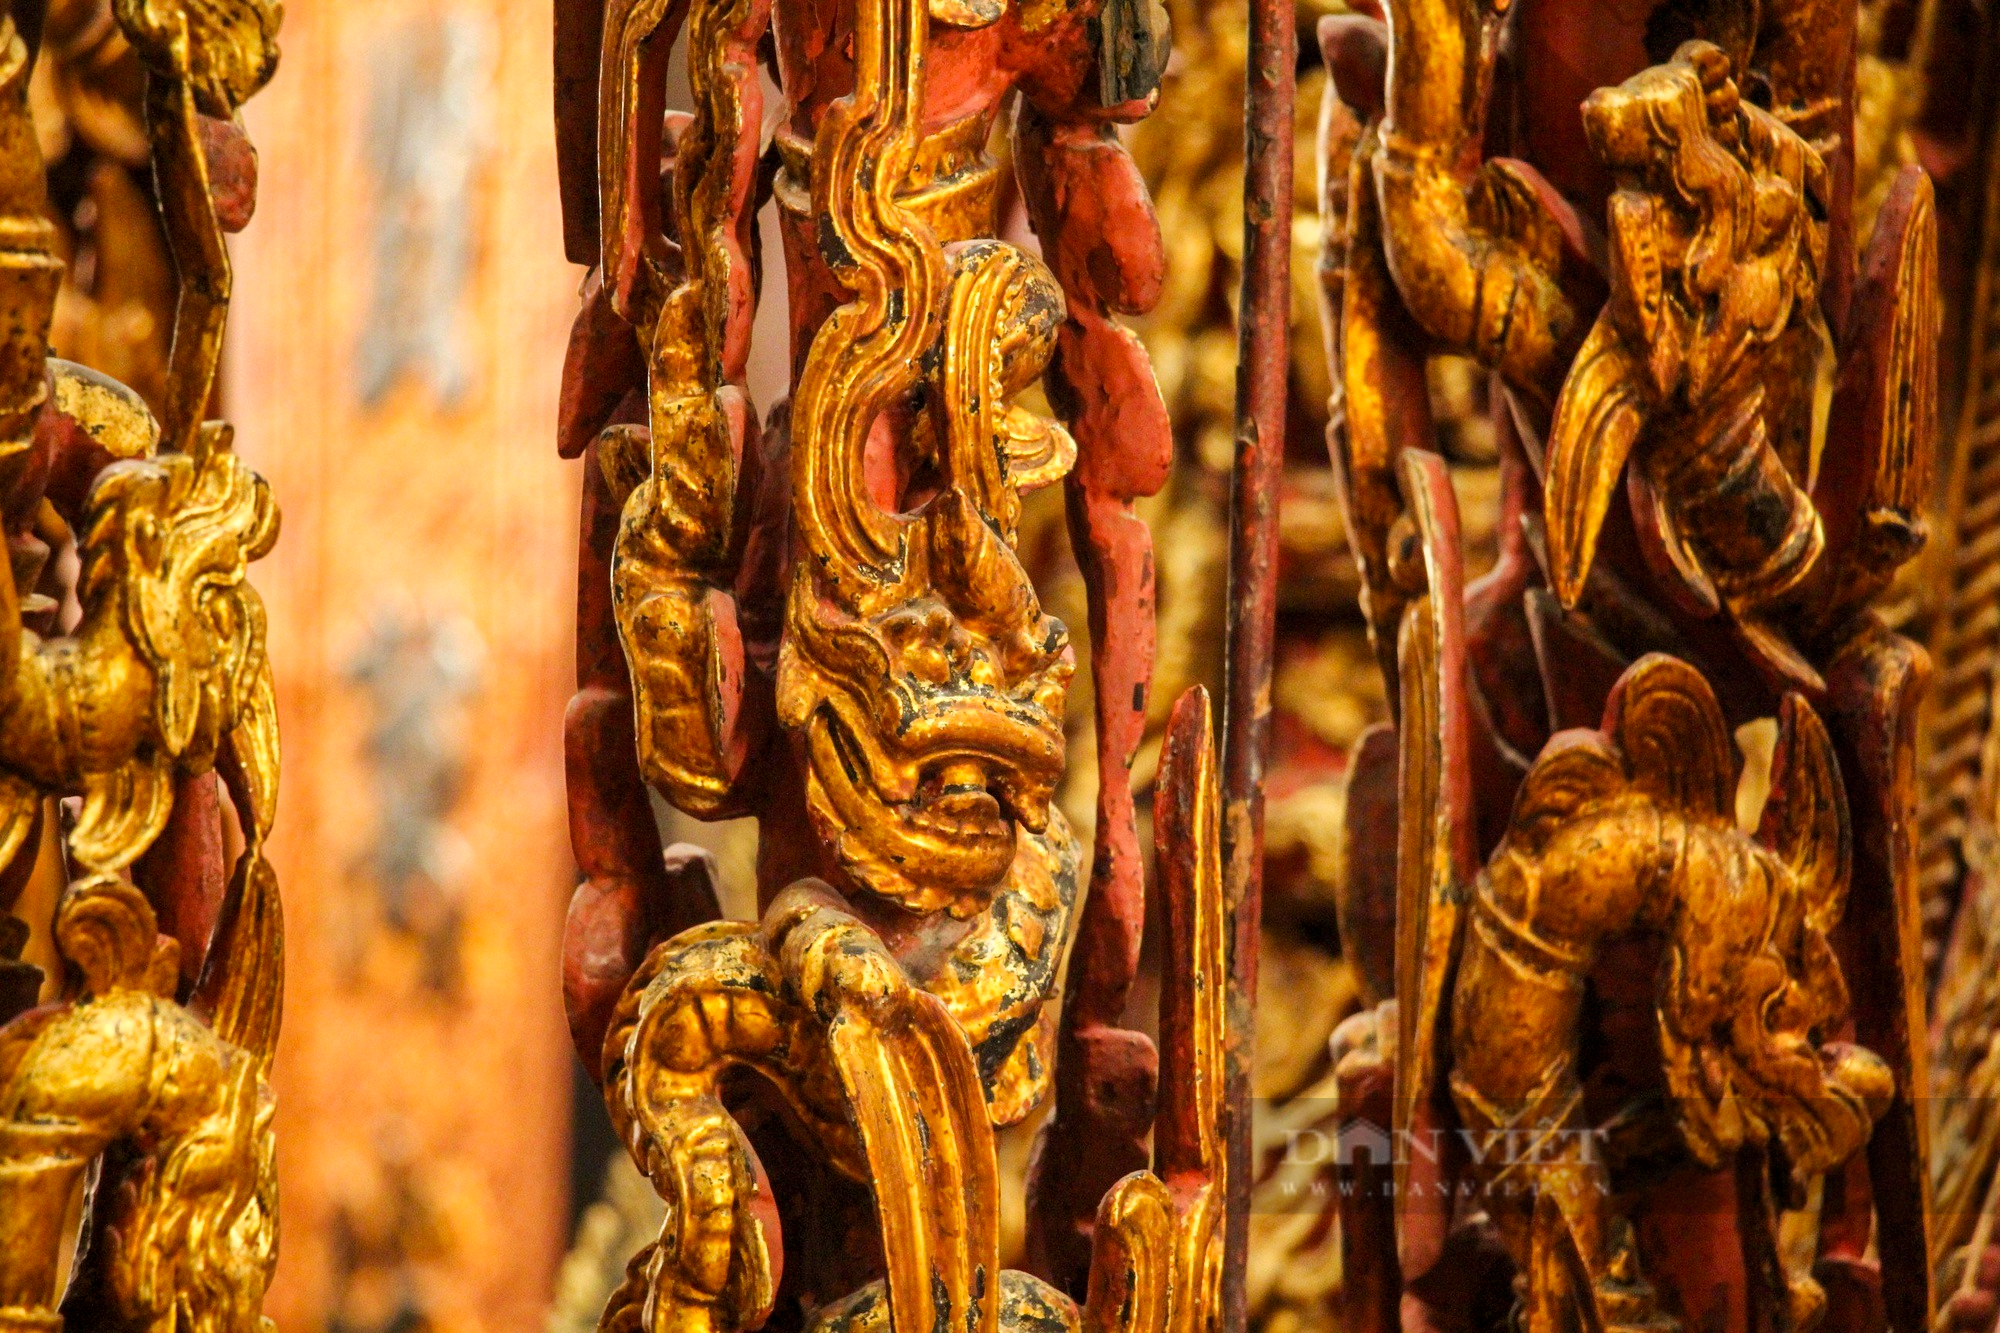 Ngai thờ sơn son thếp vàng 300 tuổi ở Thái Bình được công nhận là bảo vật quốc gia - Ảnh 7.